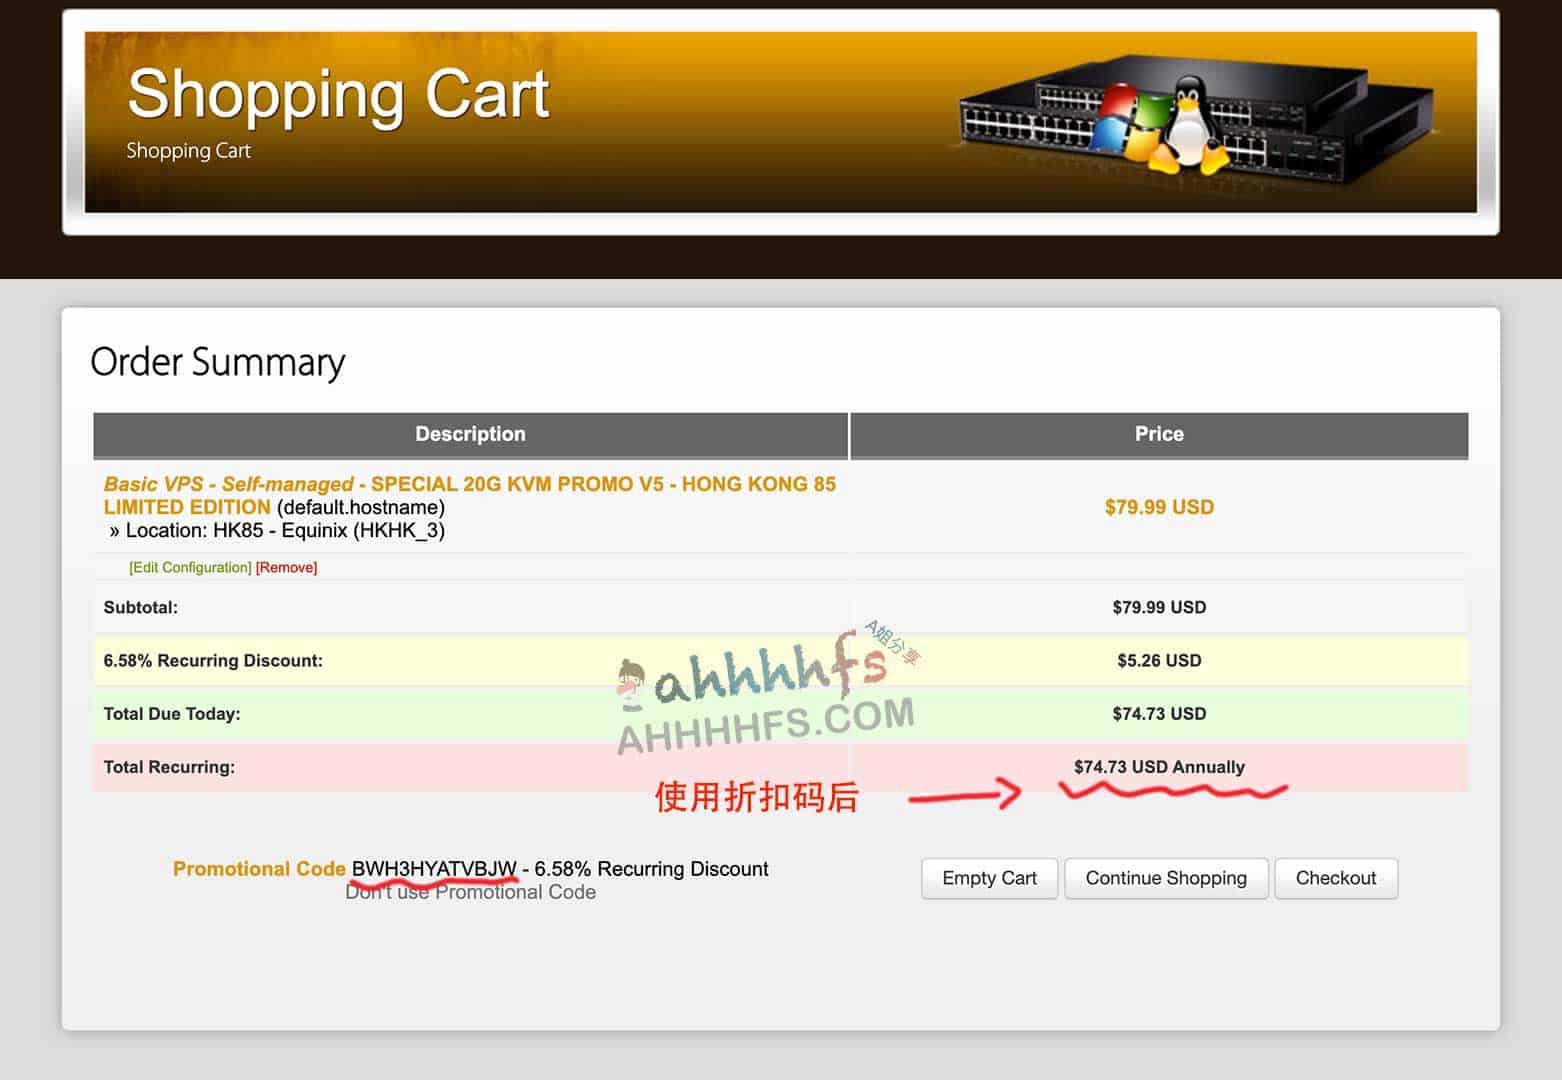 搬瓦工上线全新香港限量版套餐：年付79.99美元 HK85 机房 移动CMI直连